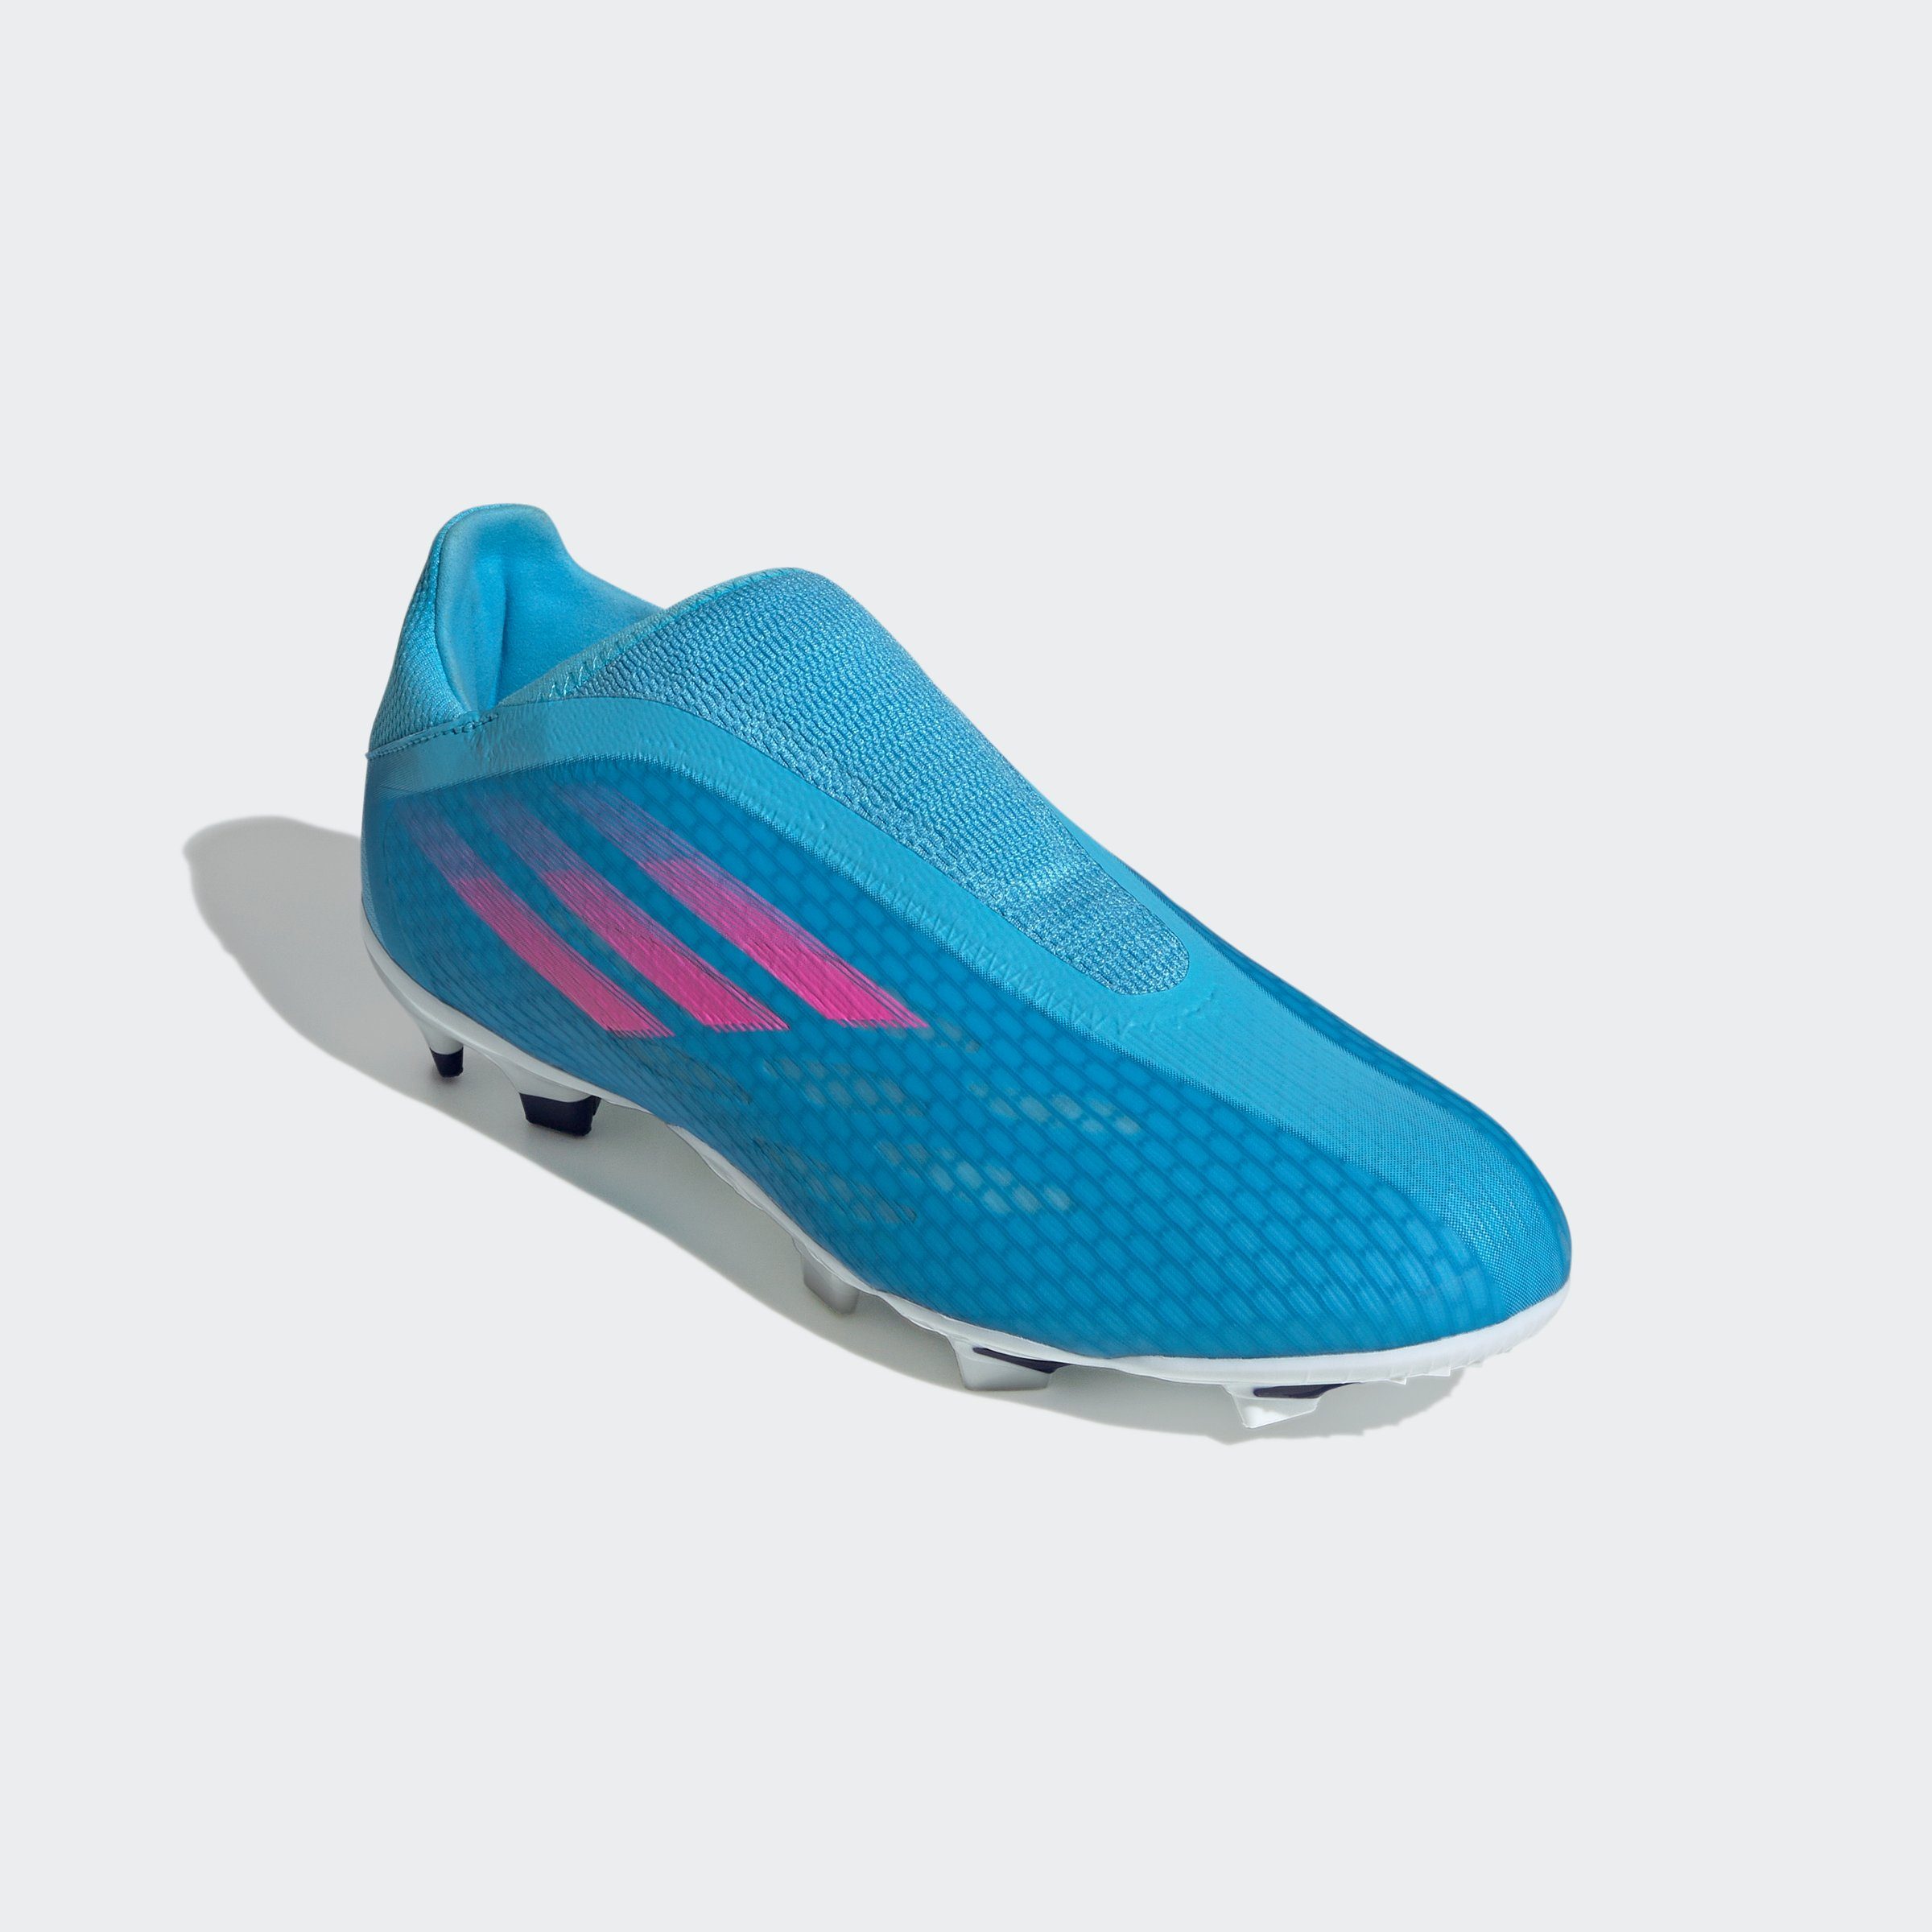 Damen Fußball Schuhe mit Stollen » Noppenschuhe online kaufen | OTTO